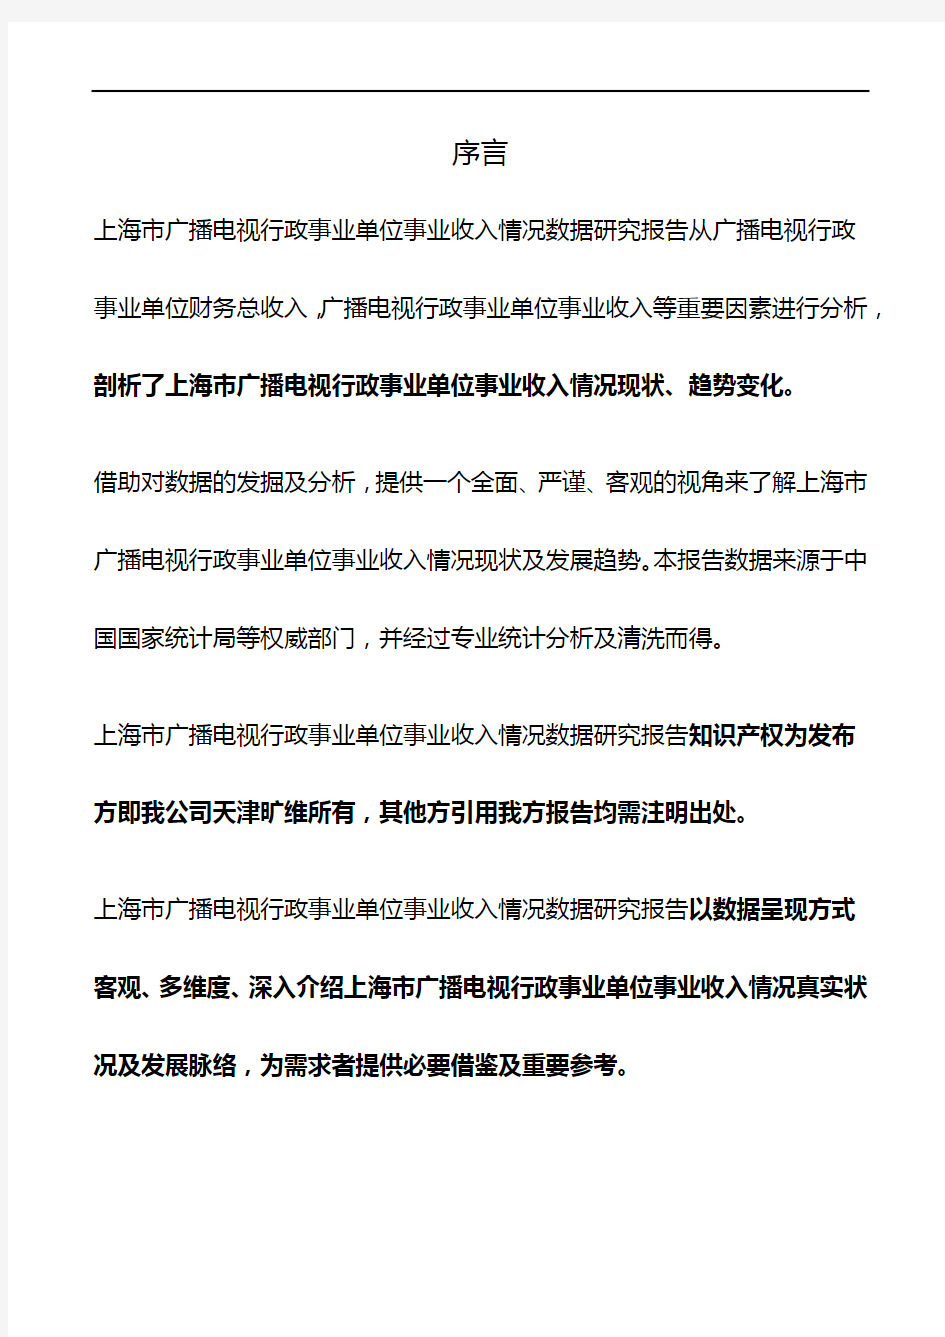 上海市广播电视行政事业单位事业收入情况3年数据研究报告2019版